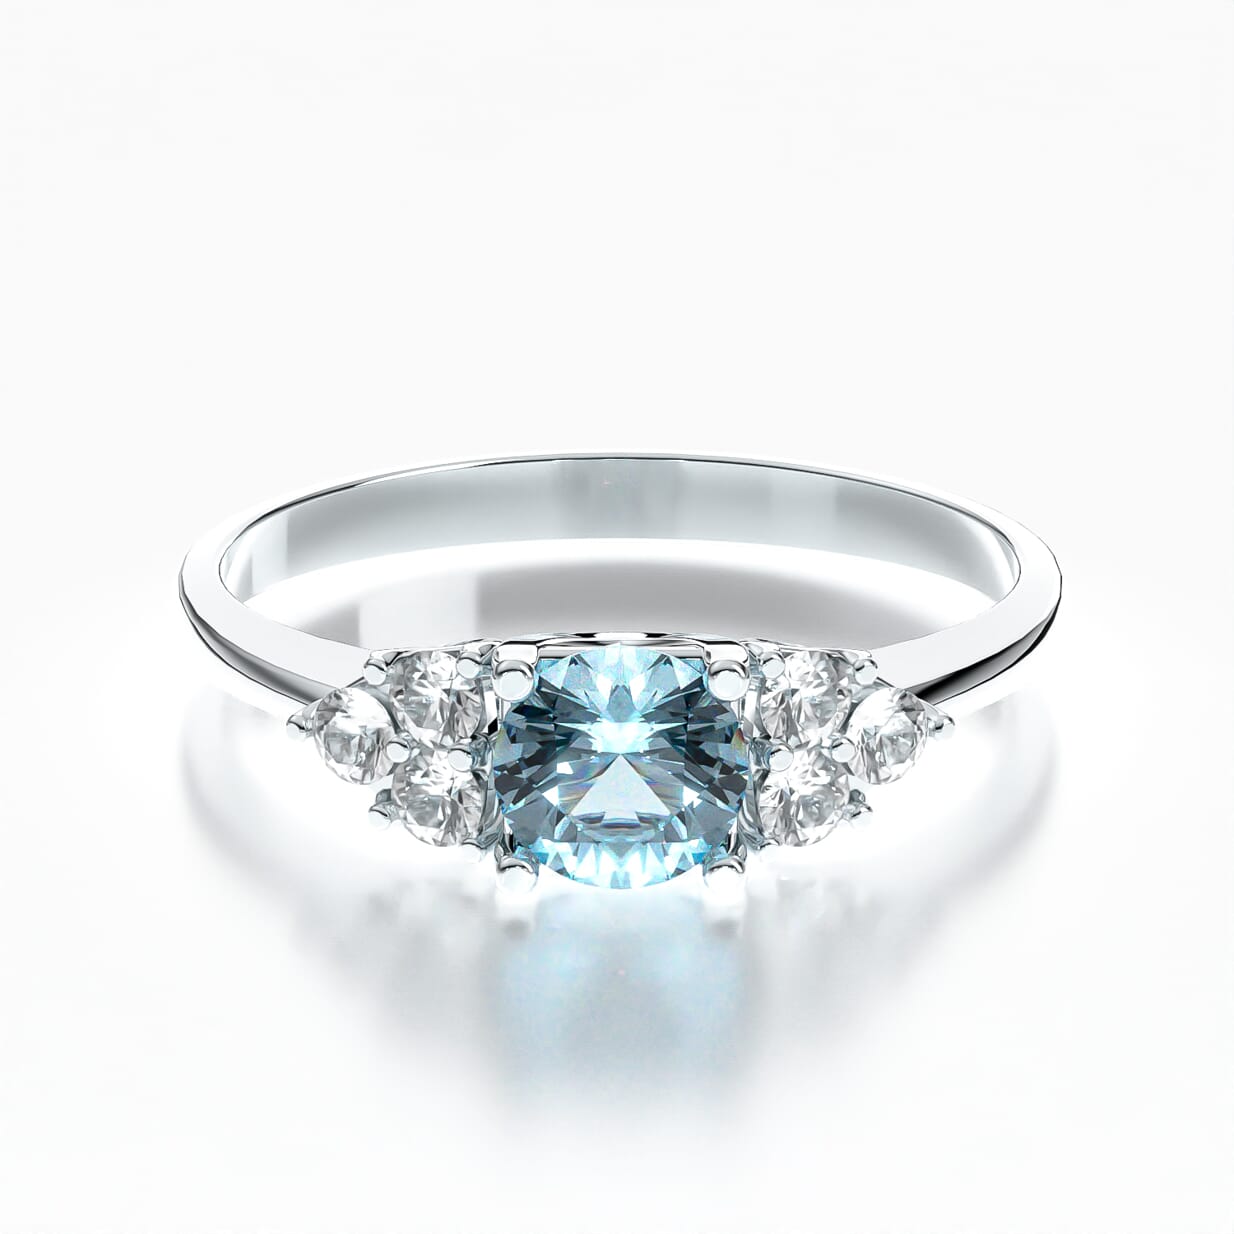 Fairytale Engagement Ring: white gold, aquamarine